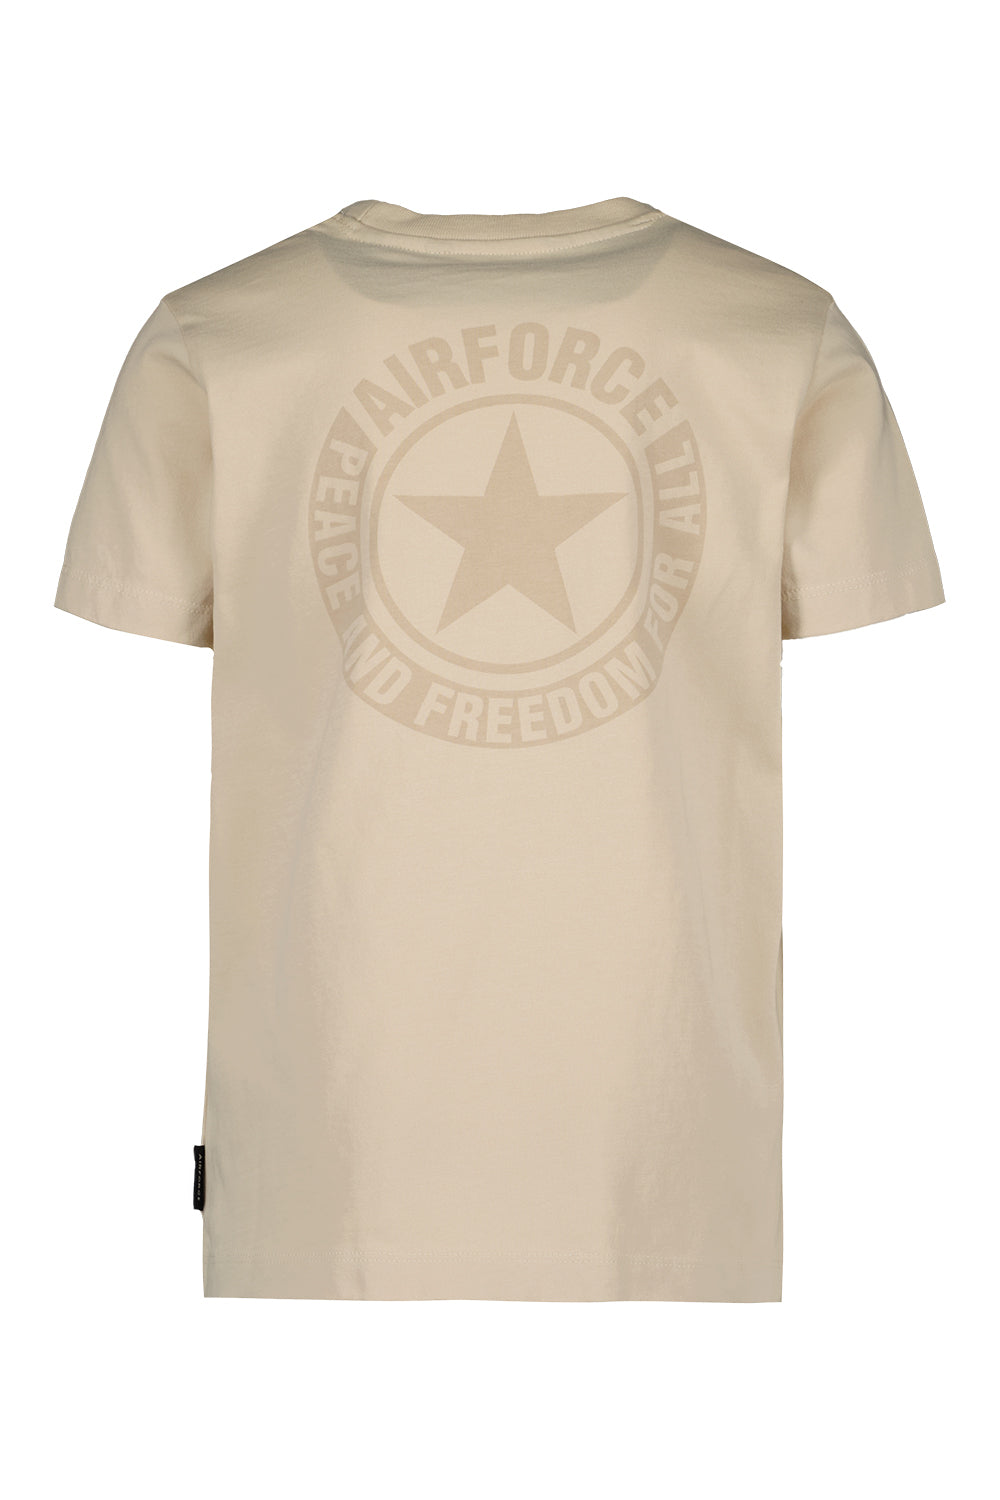 Airforce Wording/Logo T-Shirt